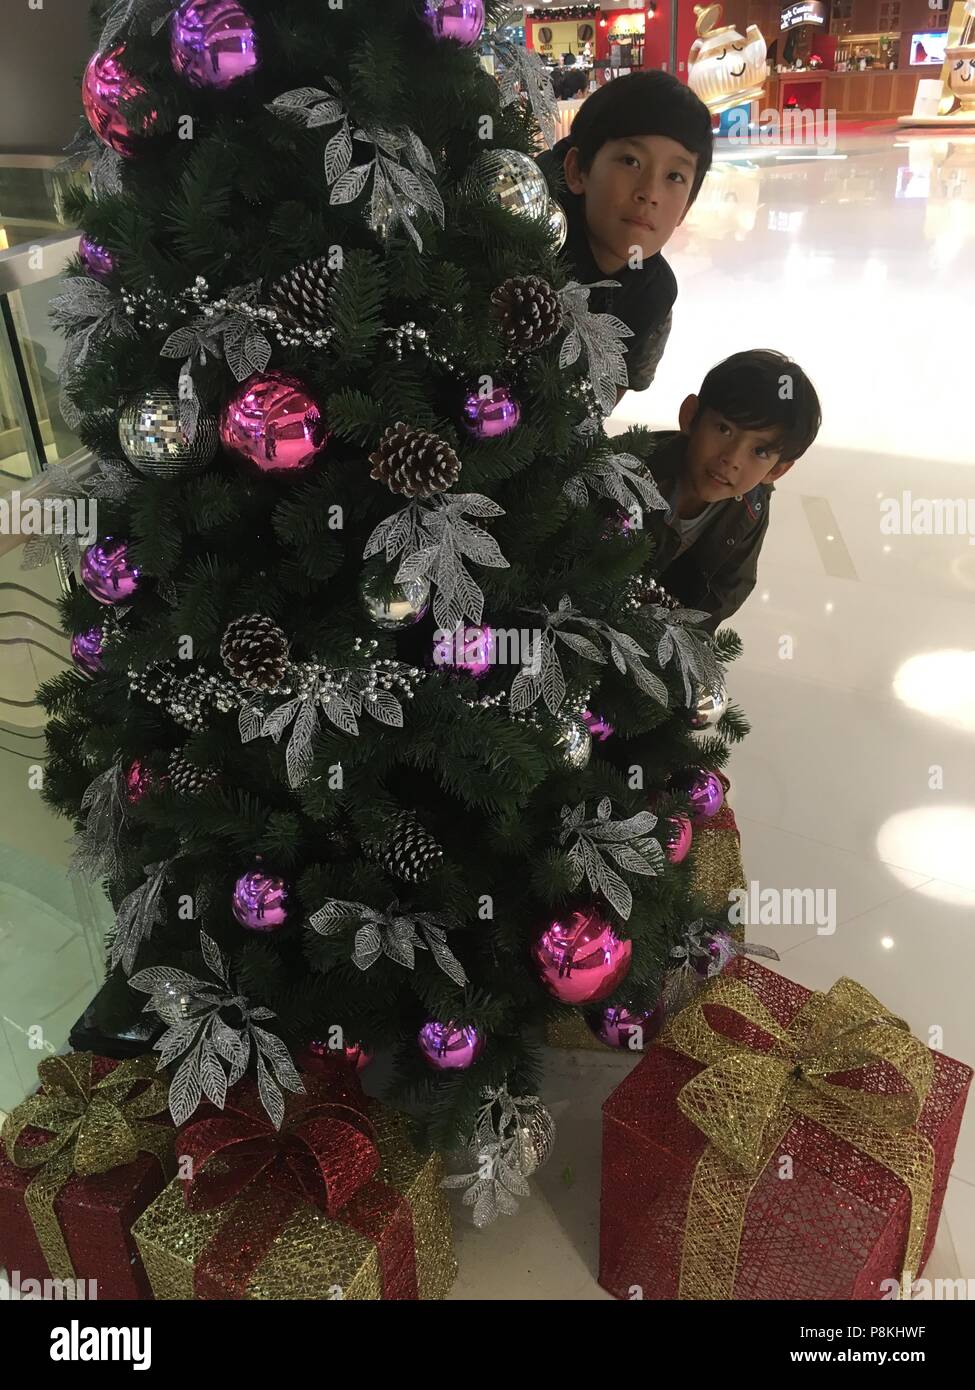 2 jeunes garçons sont cache derrière un arbre de Noël Banque D'Images